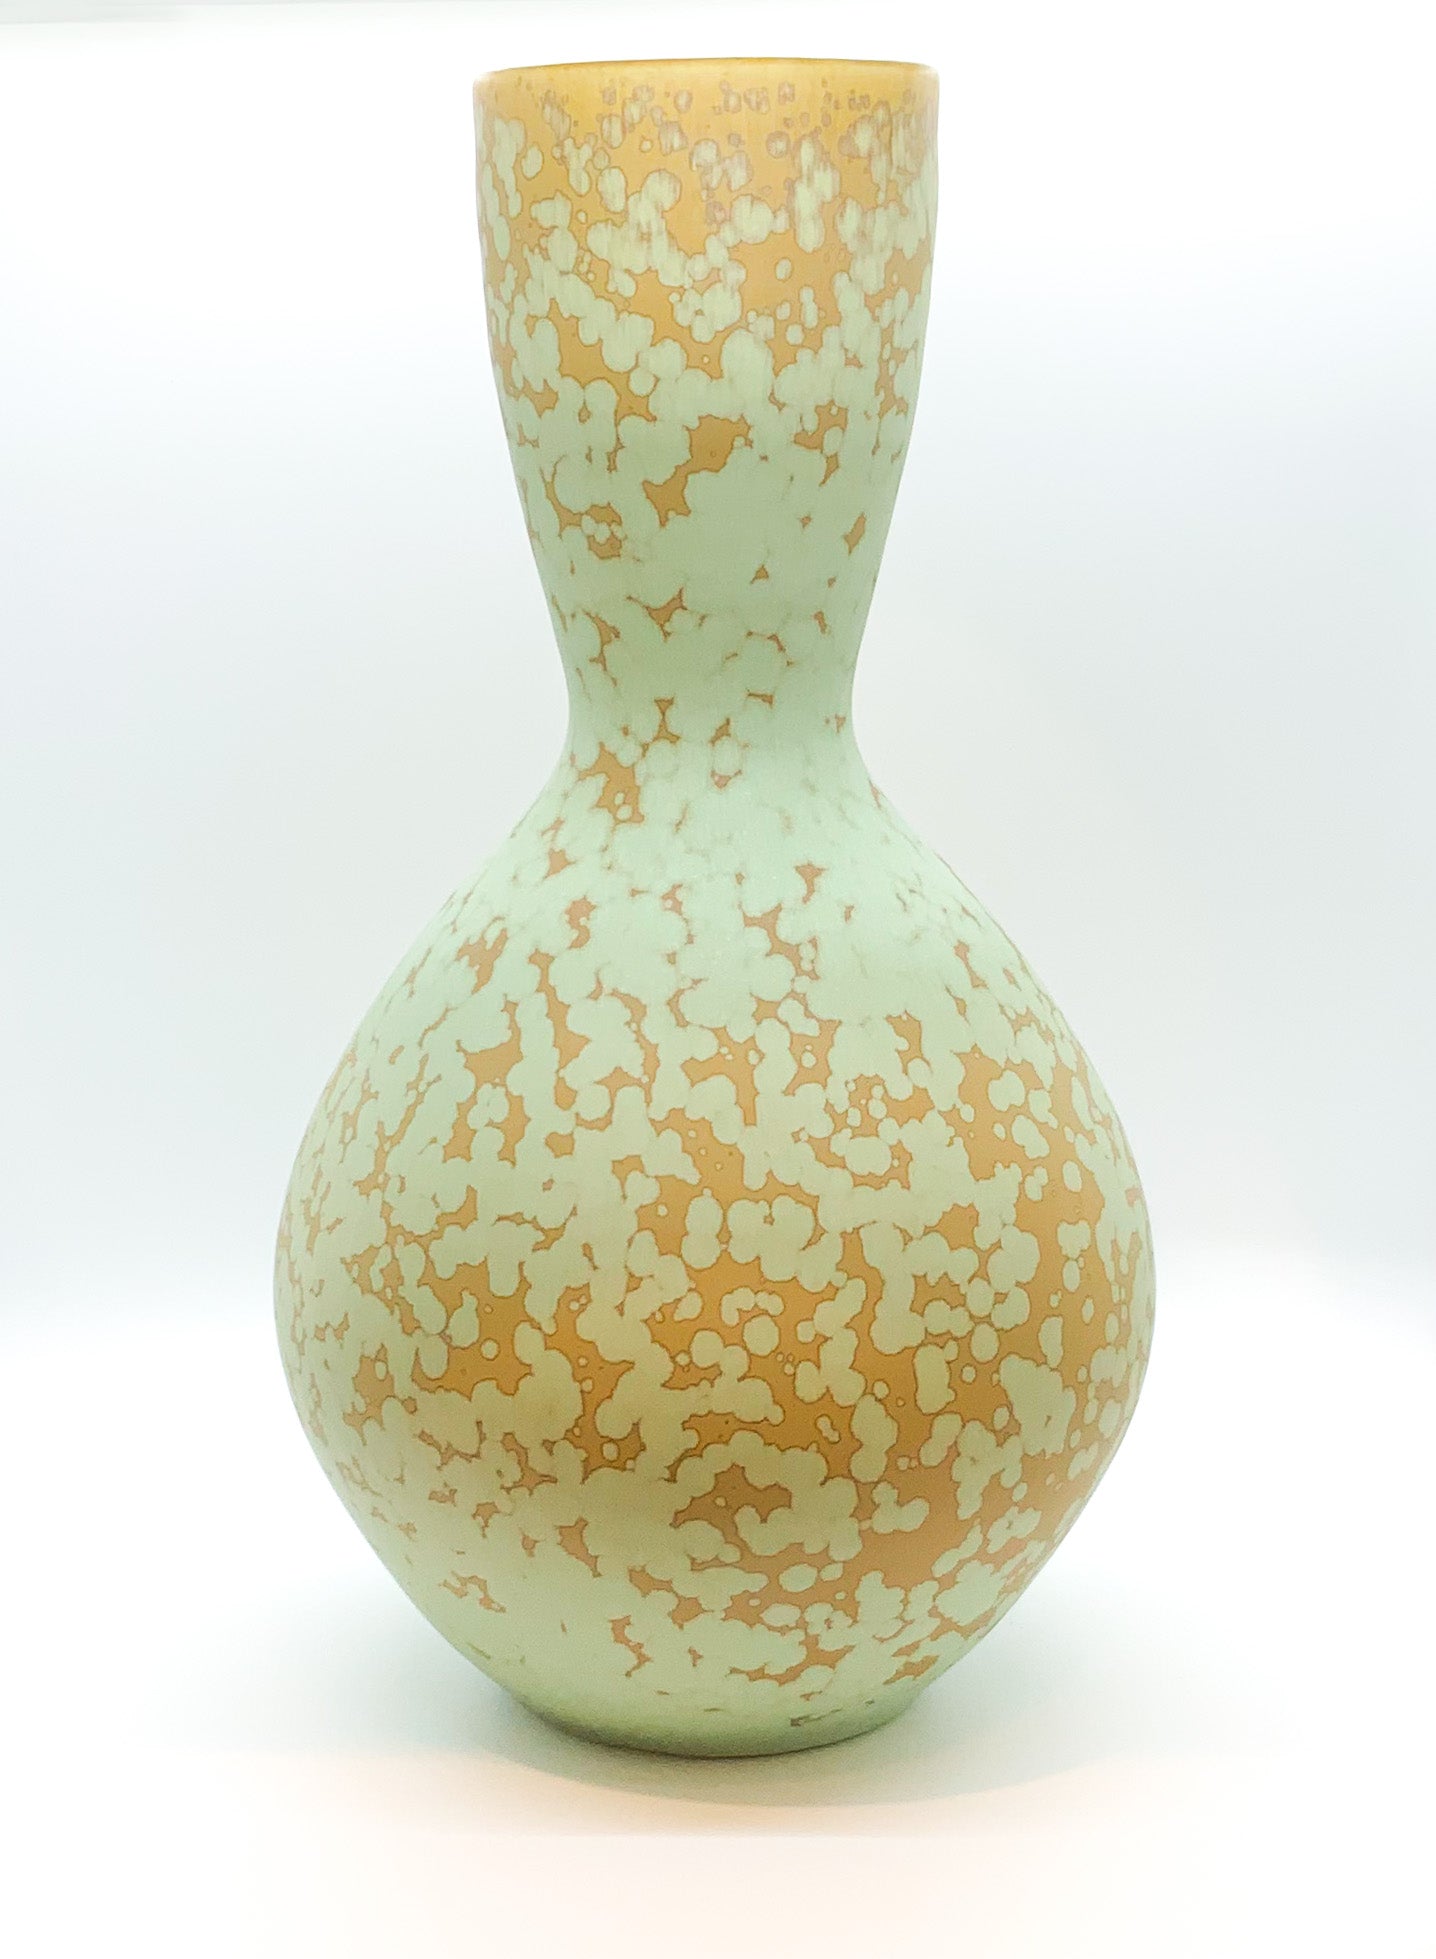 Ben Owen III Large Bottle Vase in Green Stardust